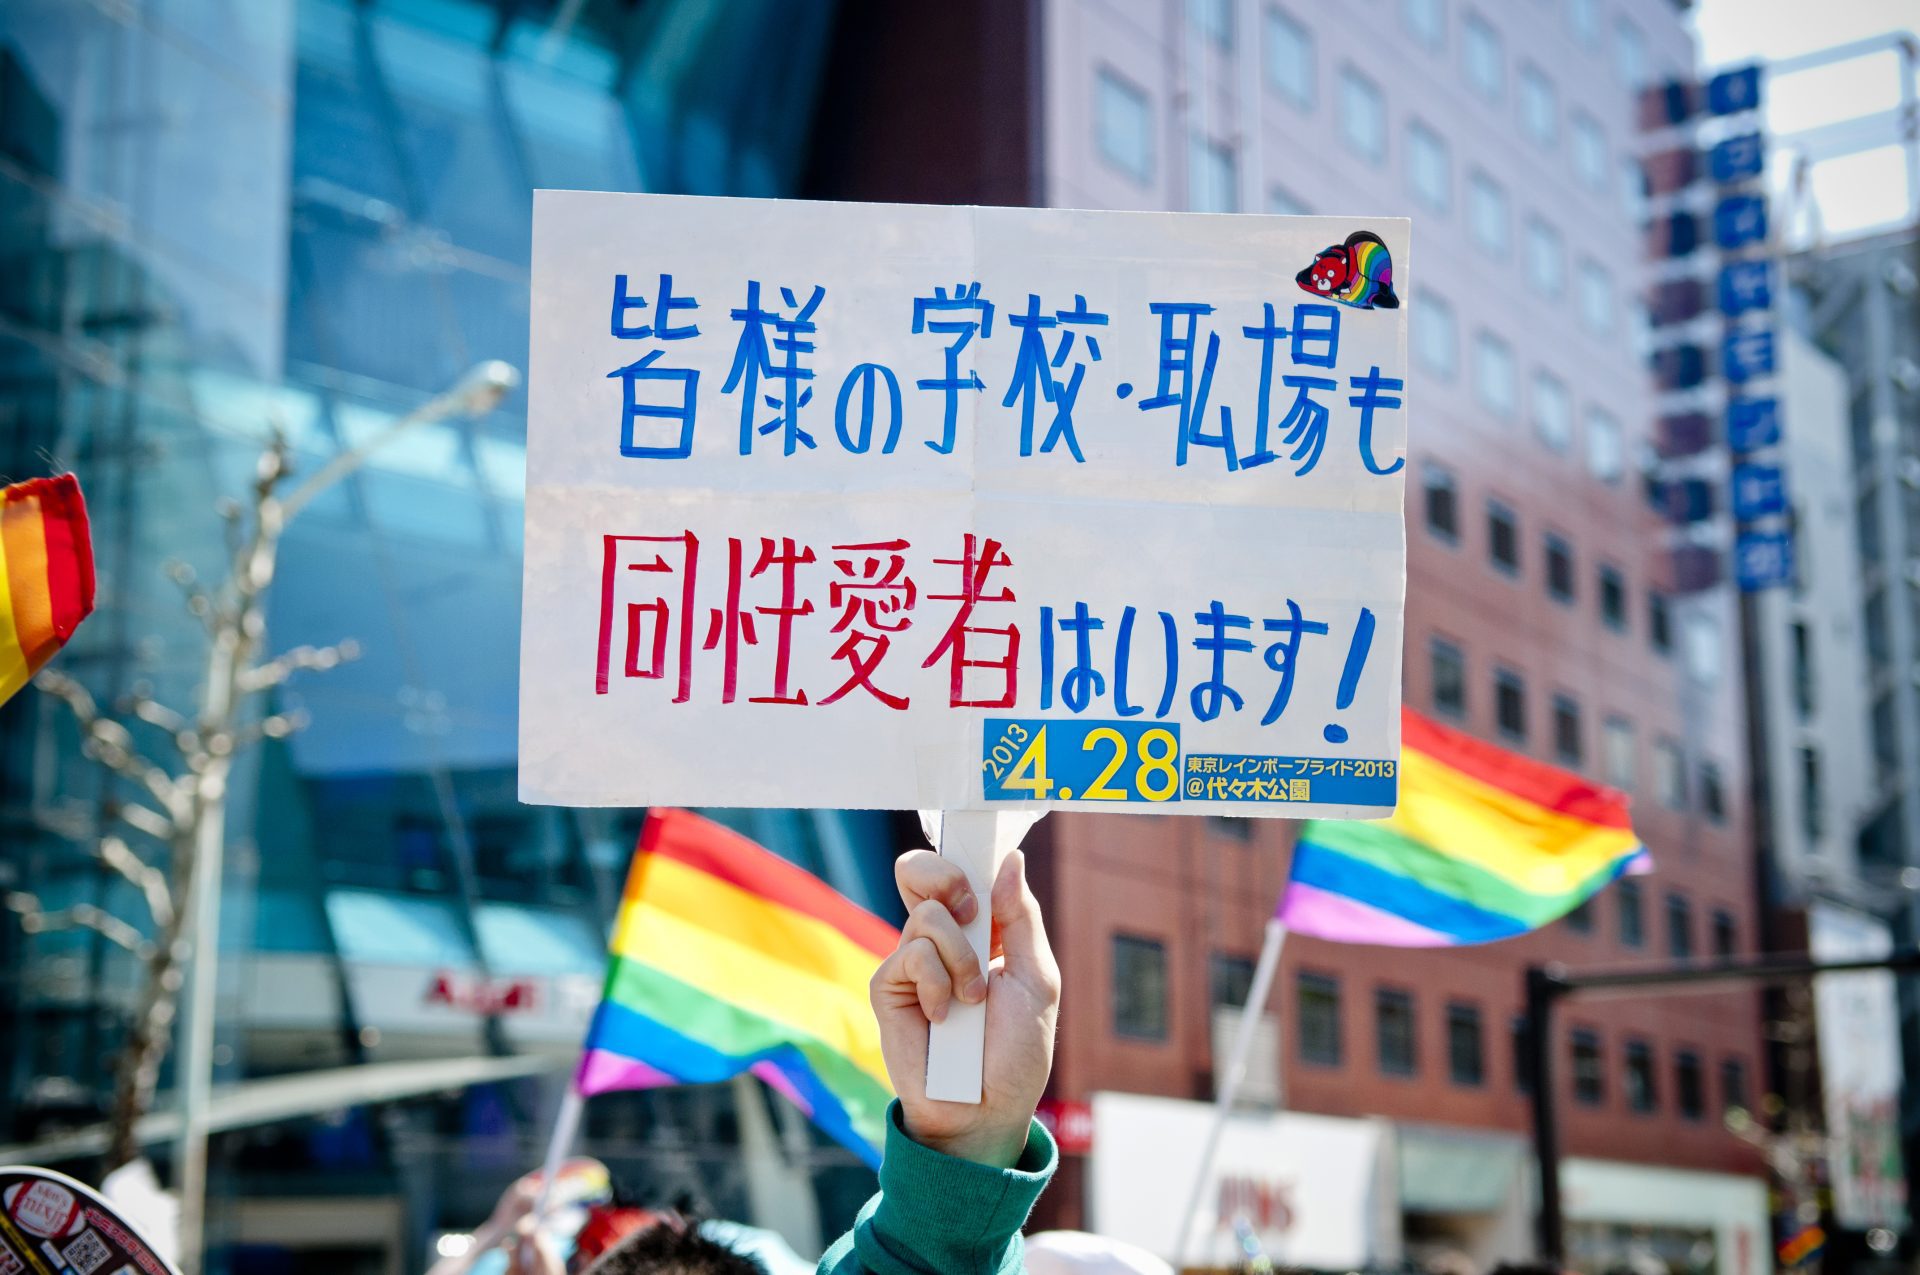 Au Japon, un livre critique la folie trans déclenche une rare escarmouche culturelle